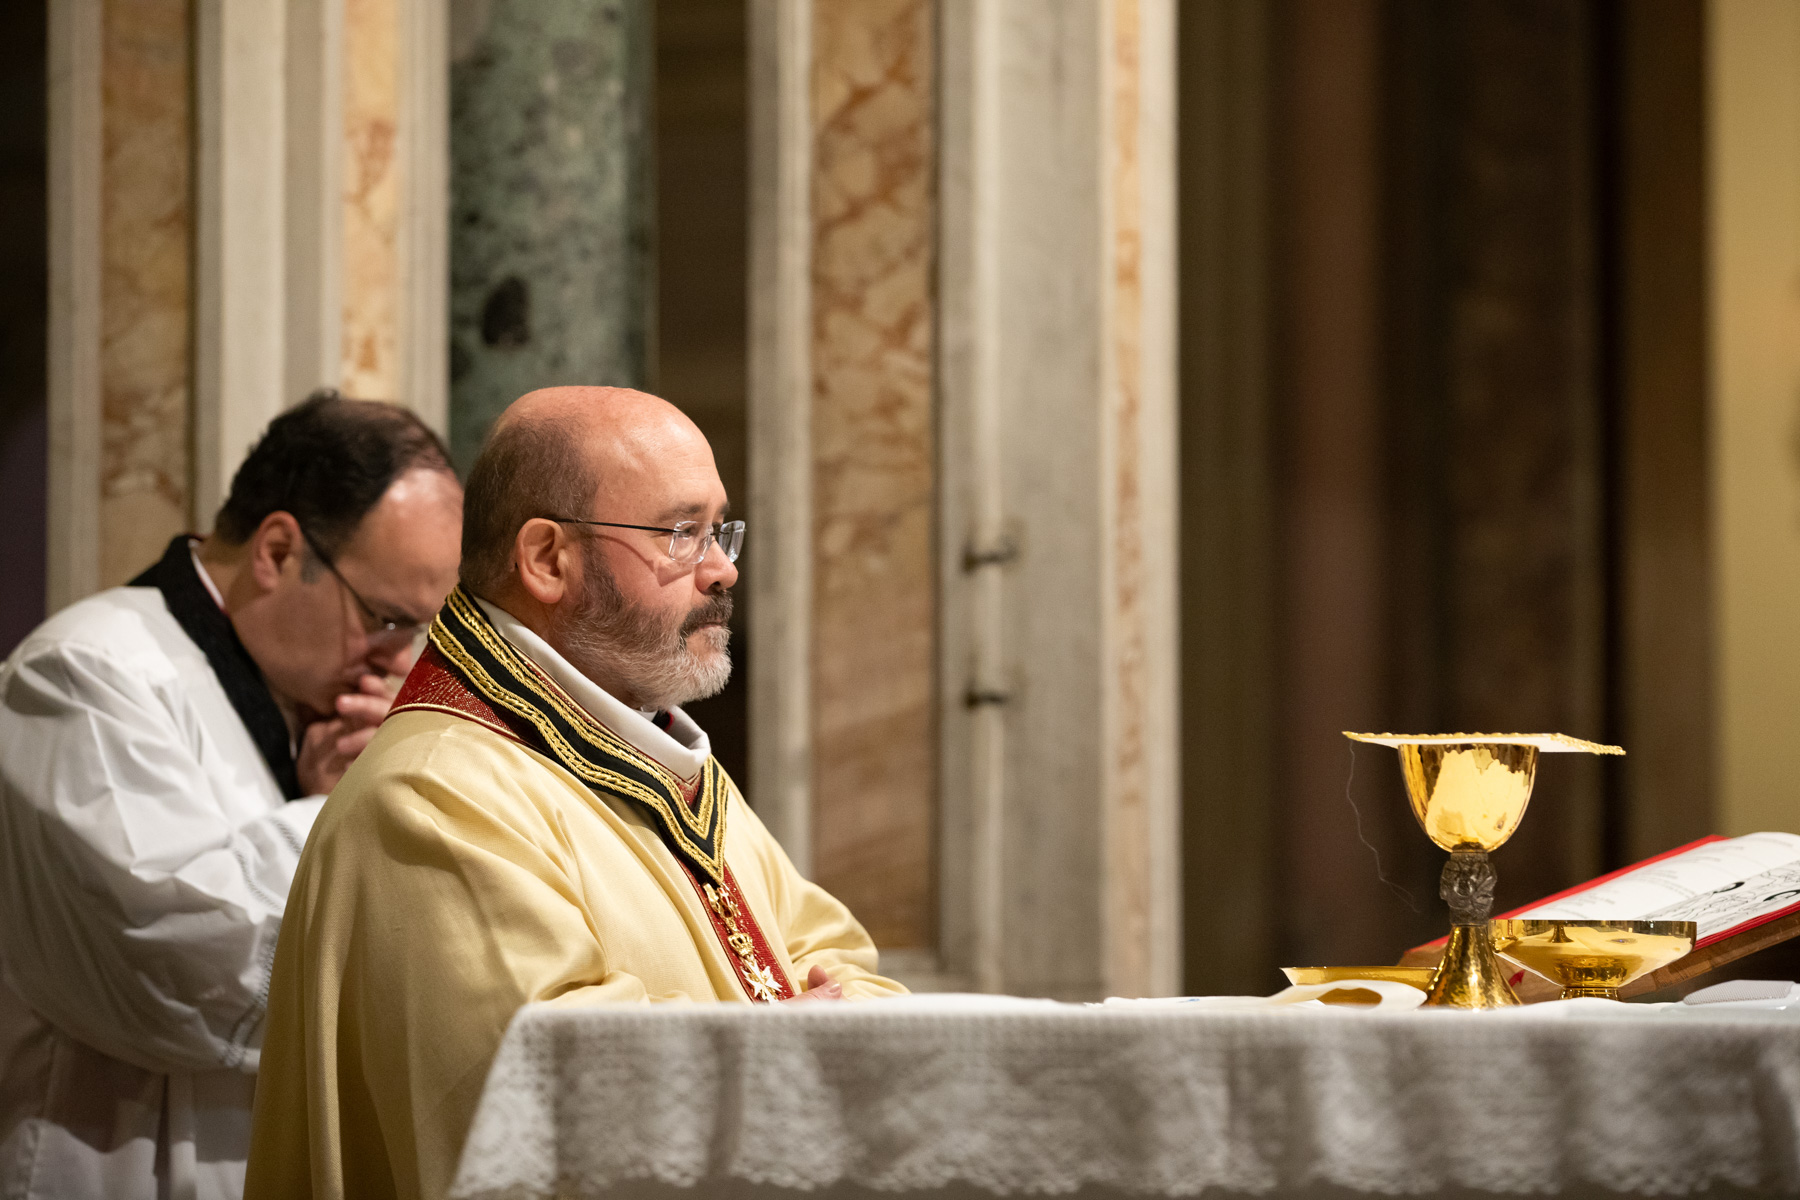 Messa di inizio mandato del Prelato dell’Ordine di Malta: invito a servire con gioia